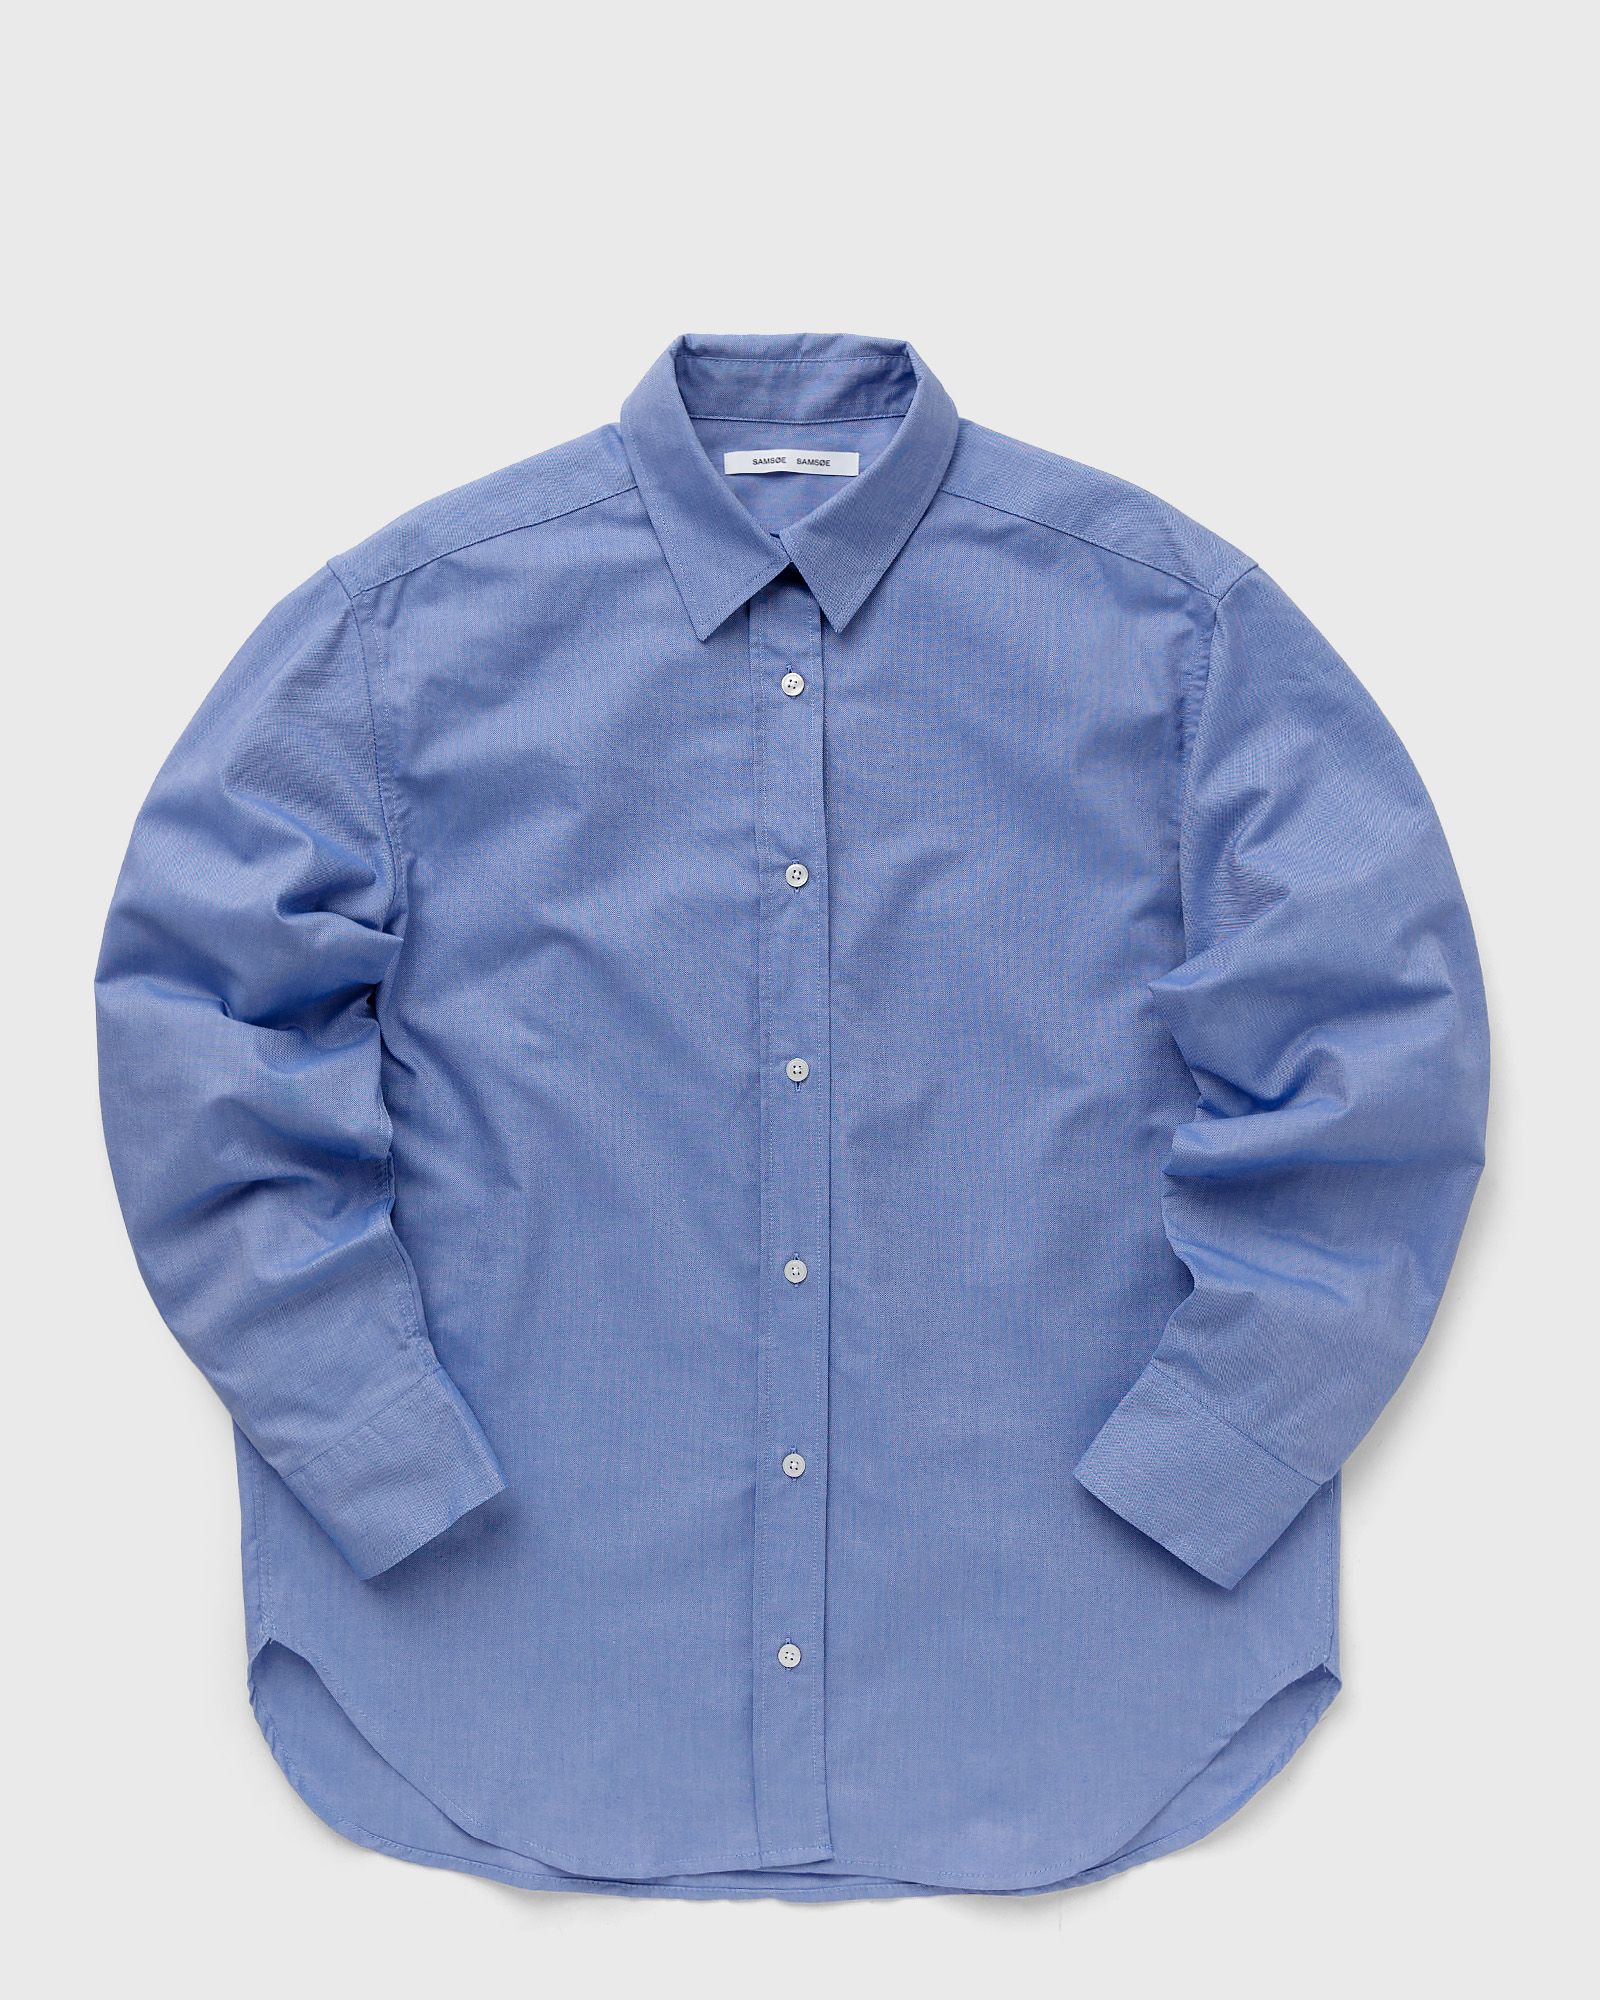 Samsøe & Samsøe - lova shirt 15041 women shirts & blouses blue in größe:m